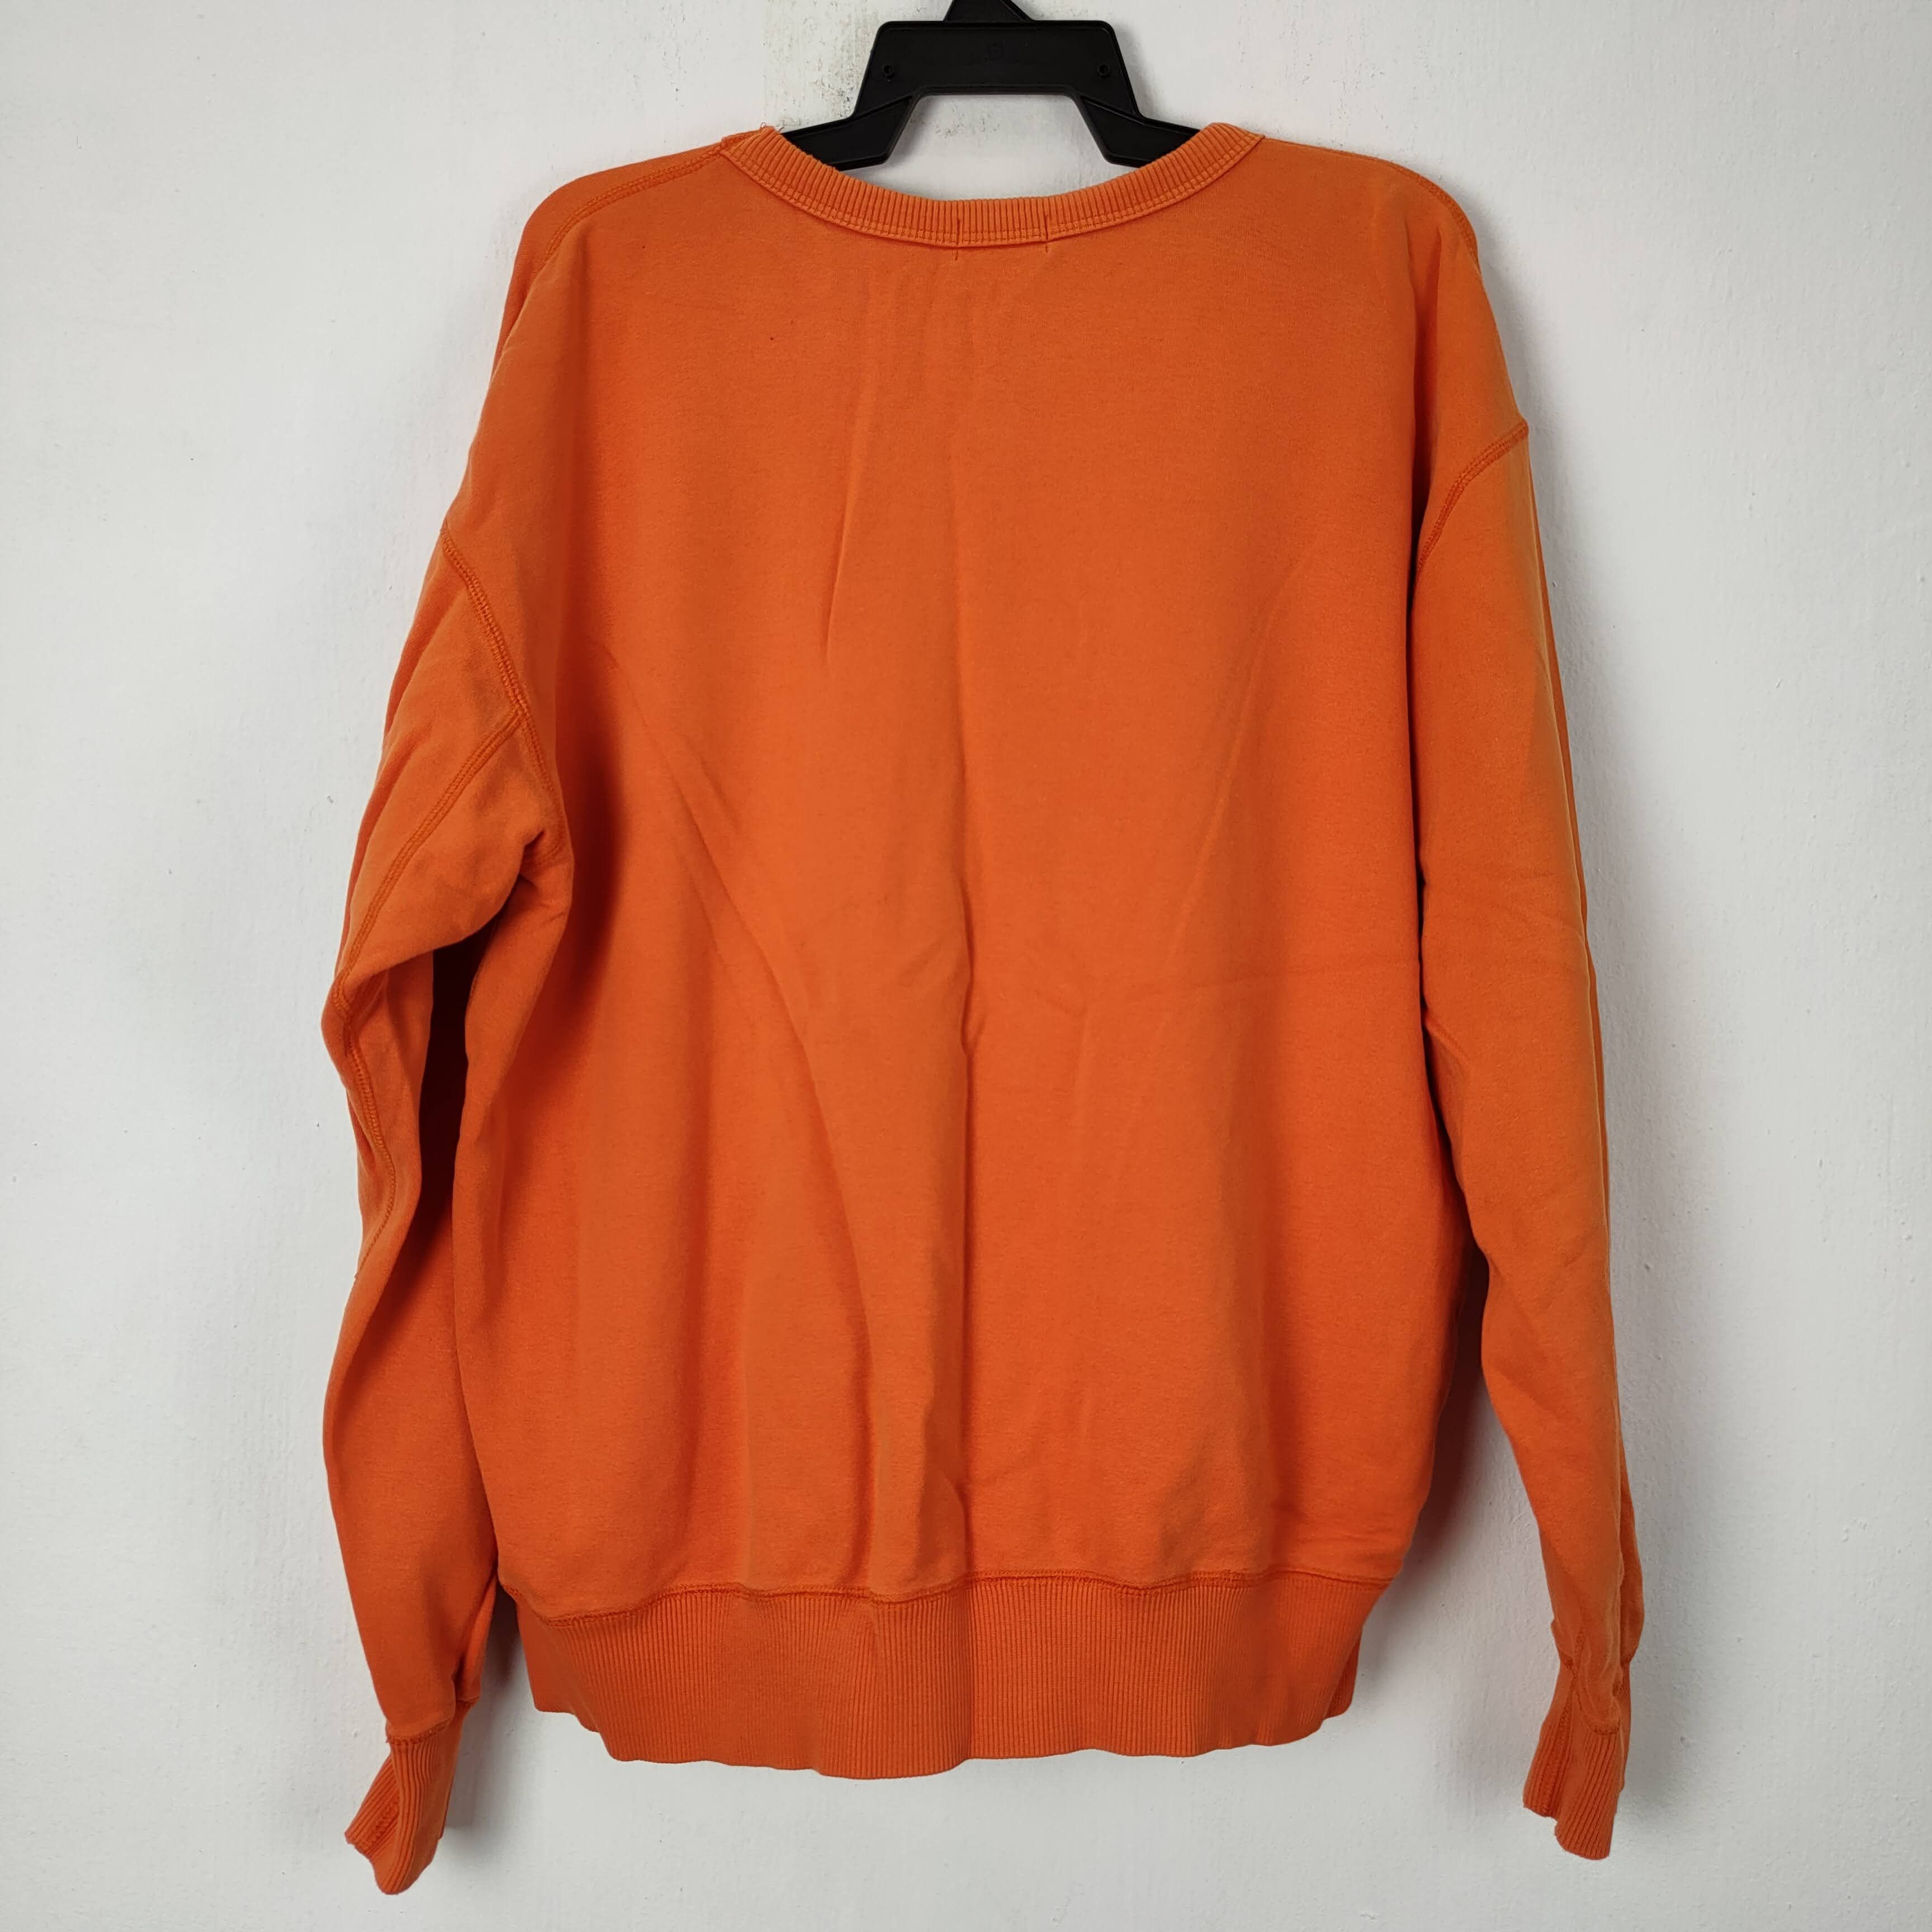 Uniqlo Uniqlo Orange Plain Sweatshirt niqlo Size US XL / EU 56 / 4 - 5 Preview